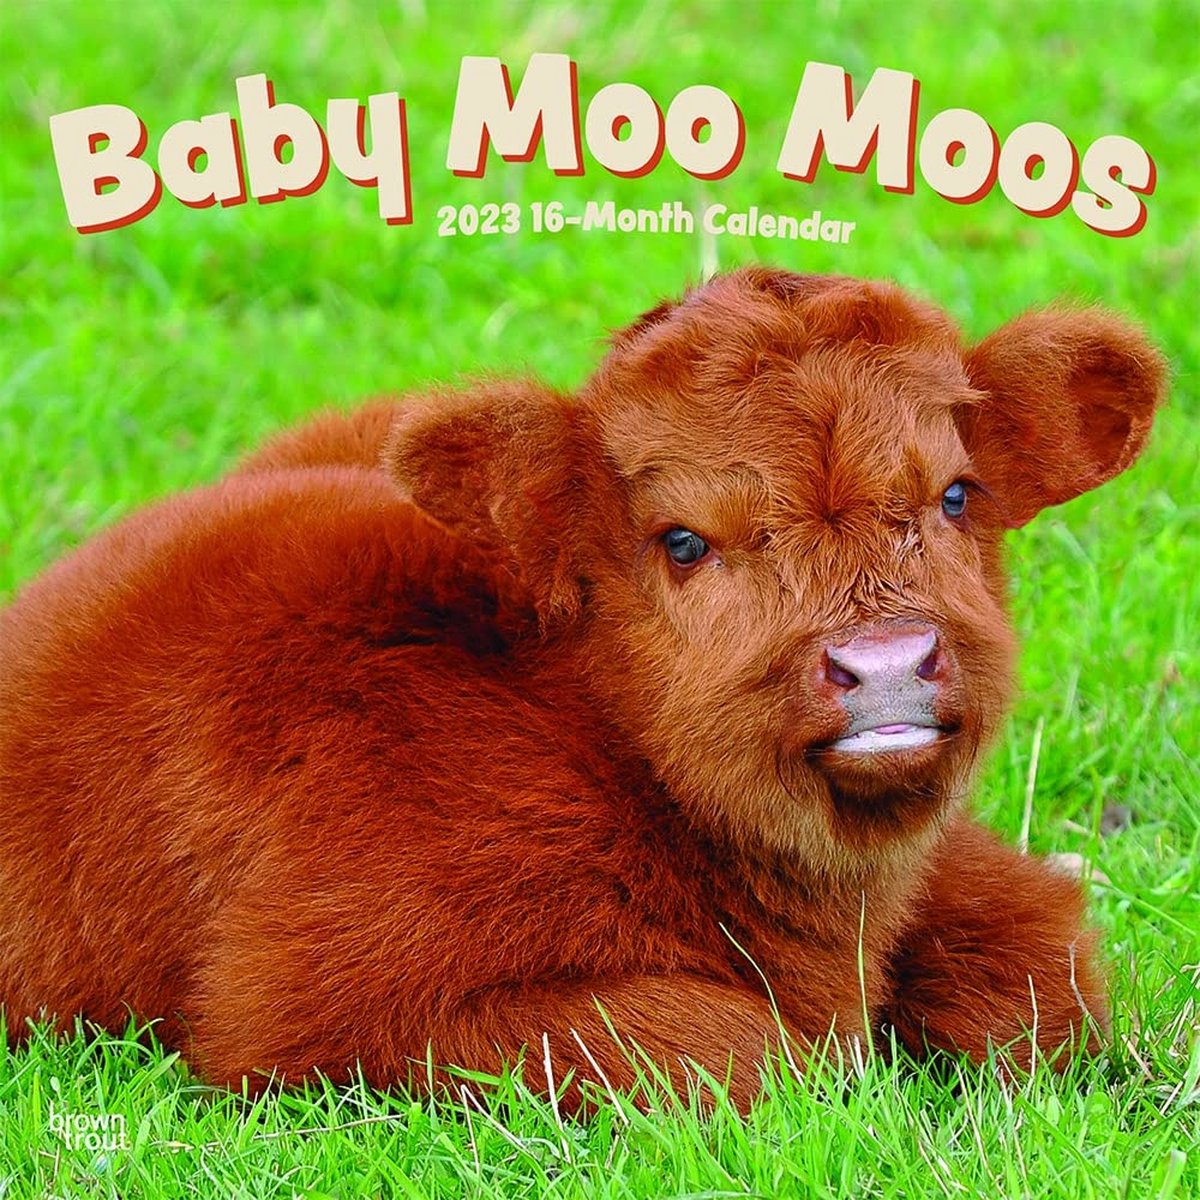 Baby Moo Moos Kalender 2023